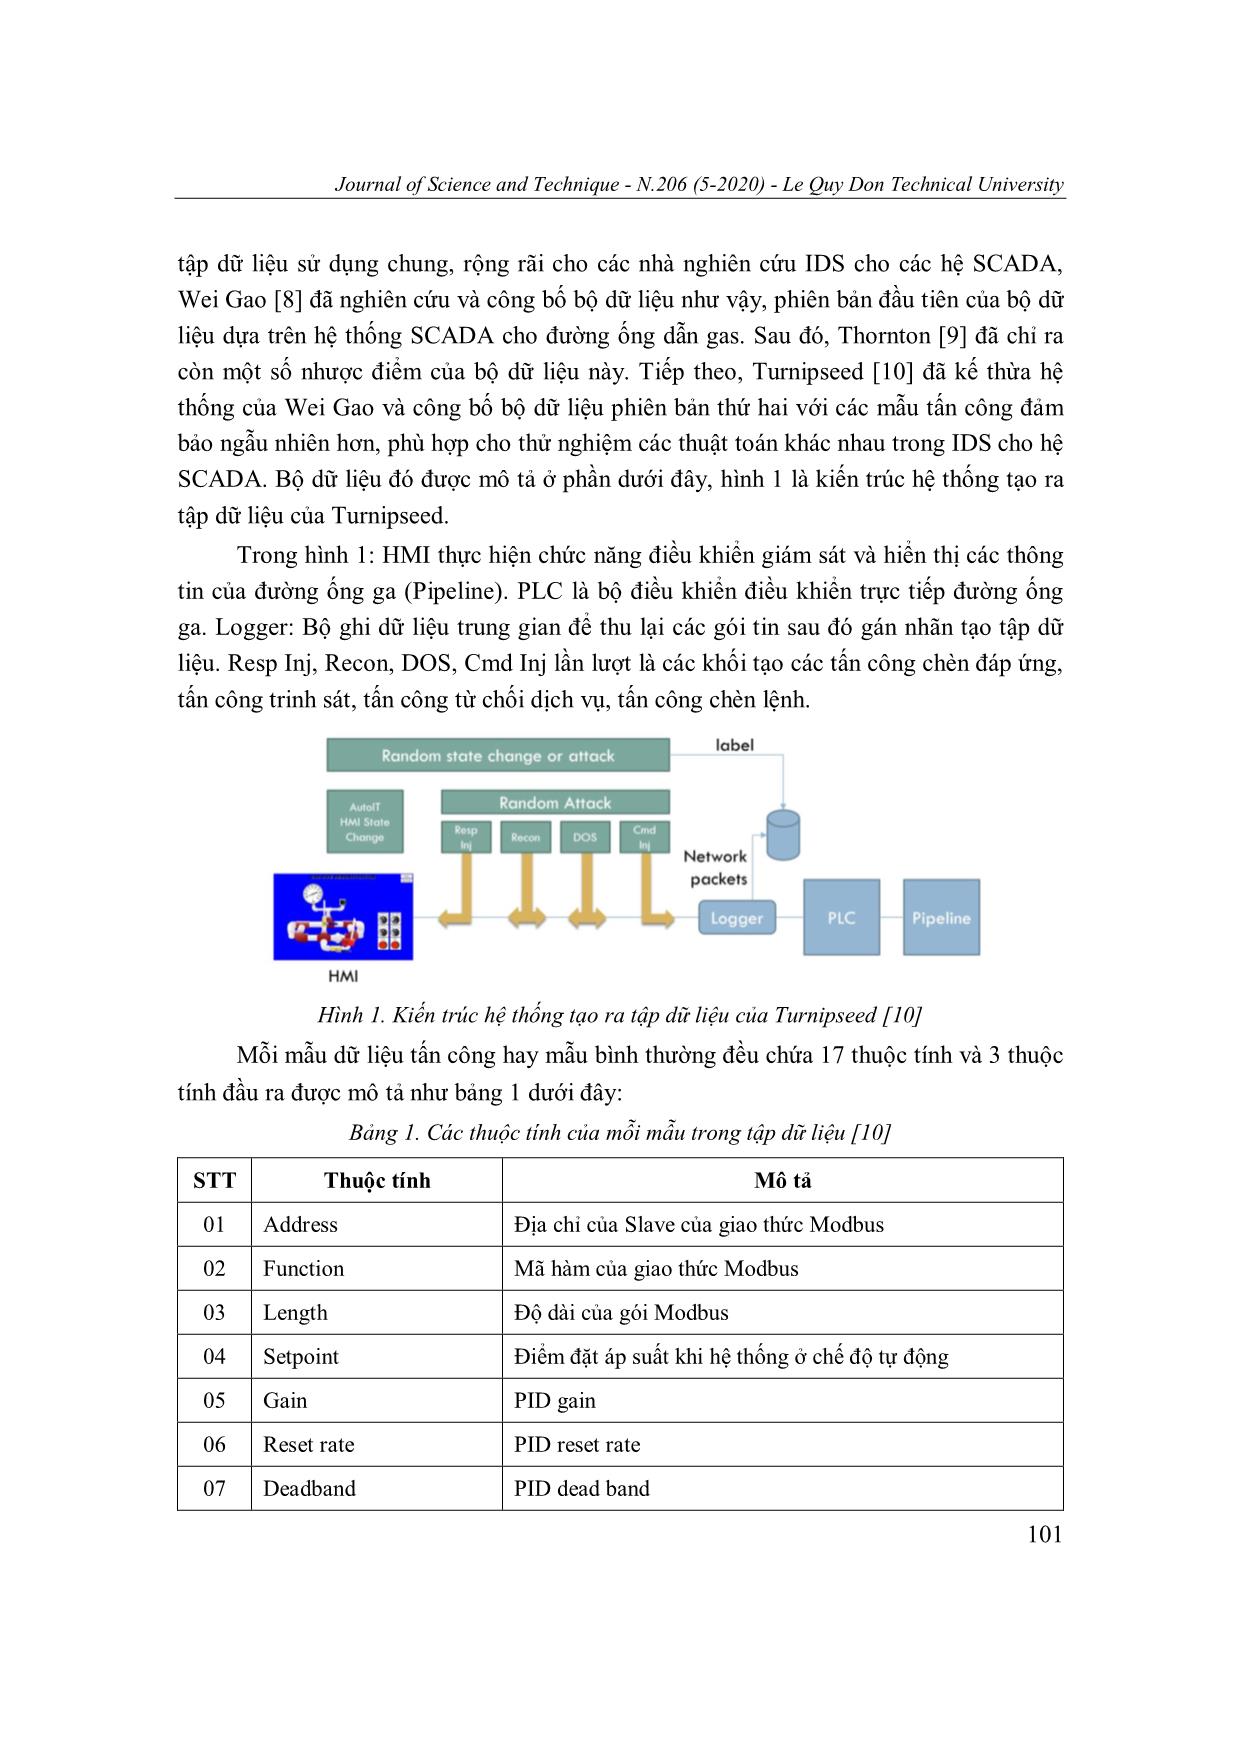 Một phương án tổ chức ngữ cảnh dữ liệu cho bộ phát hiện tấn công mạng scada sử dụng mạng nơron mlp trang 4